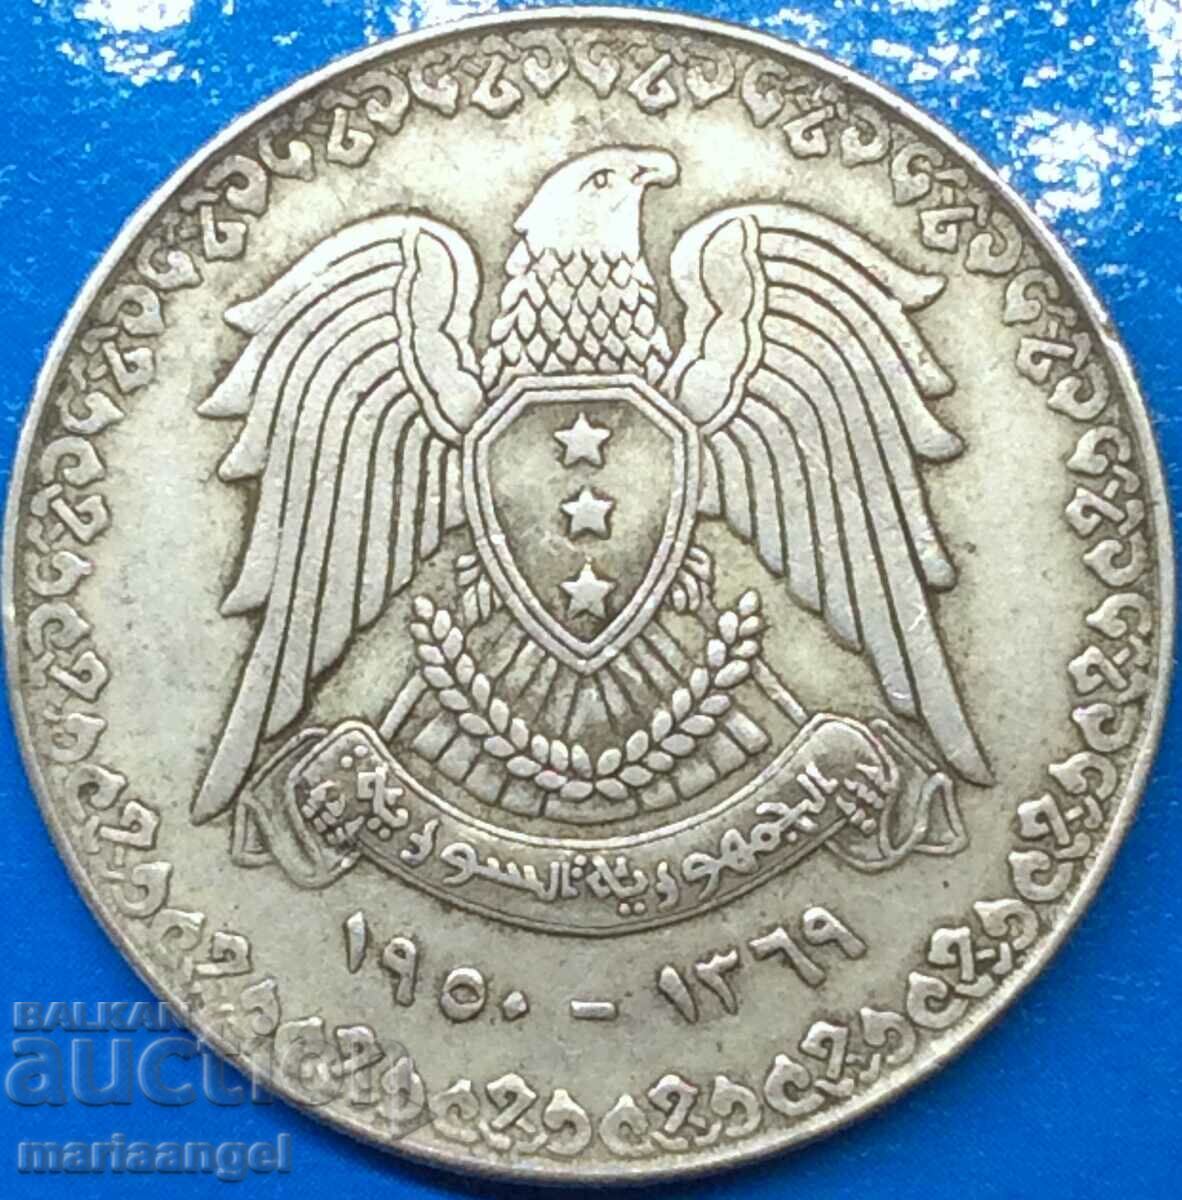 Λίβανος 1950 1 Λίρα "Eagle" ασήμι 9,97 γρ